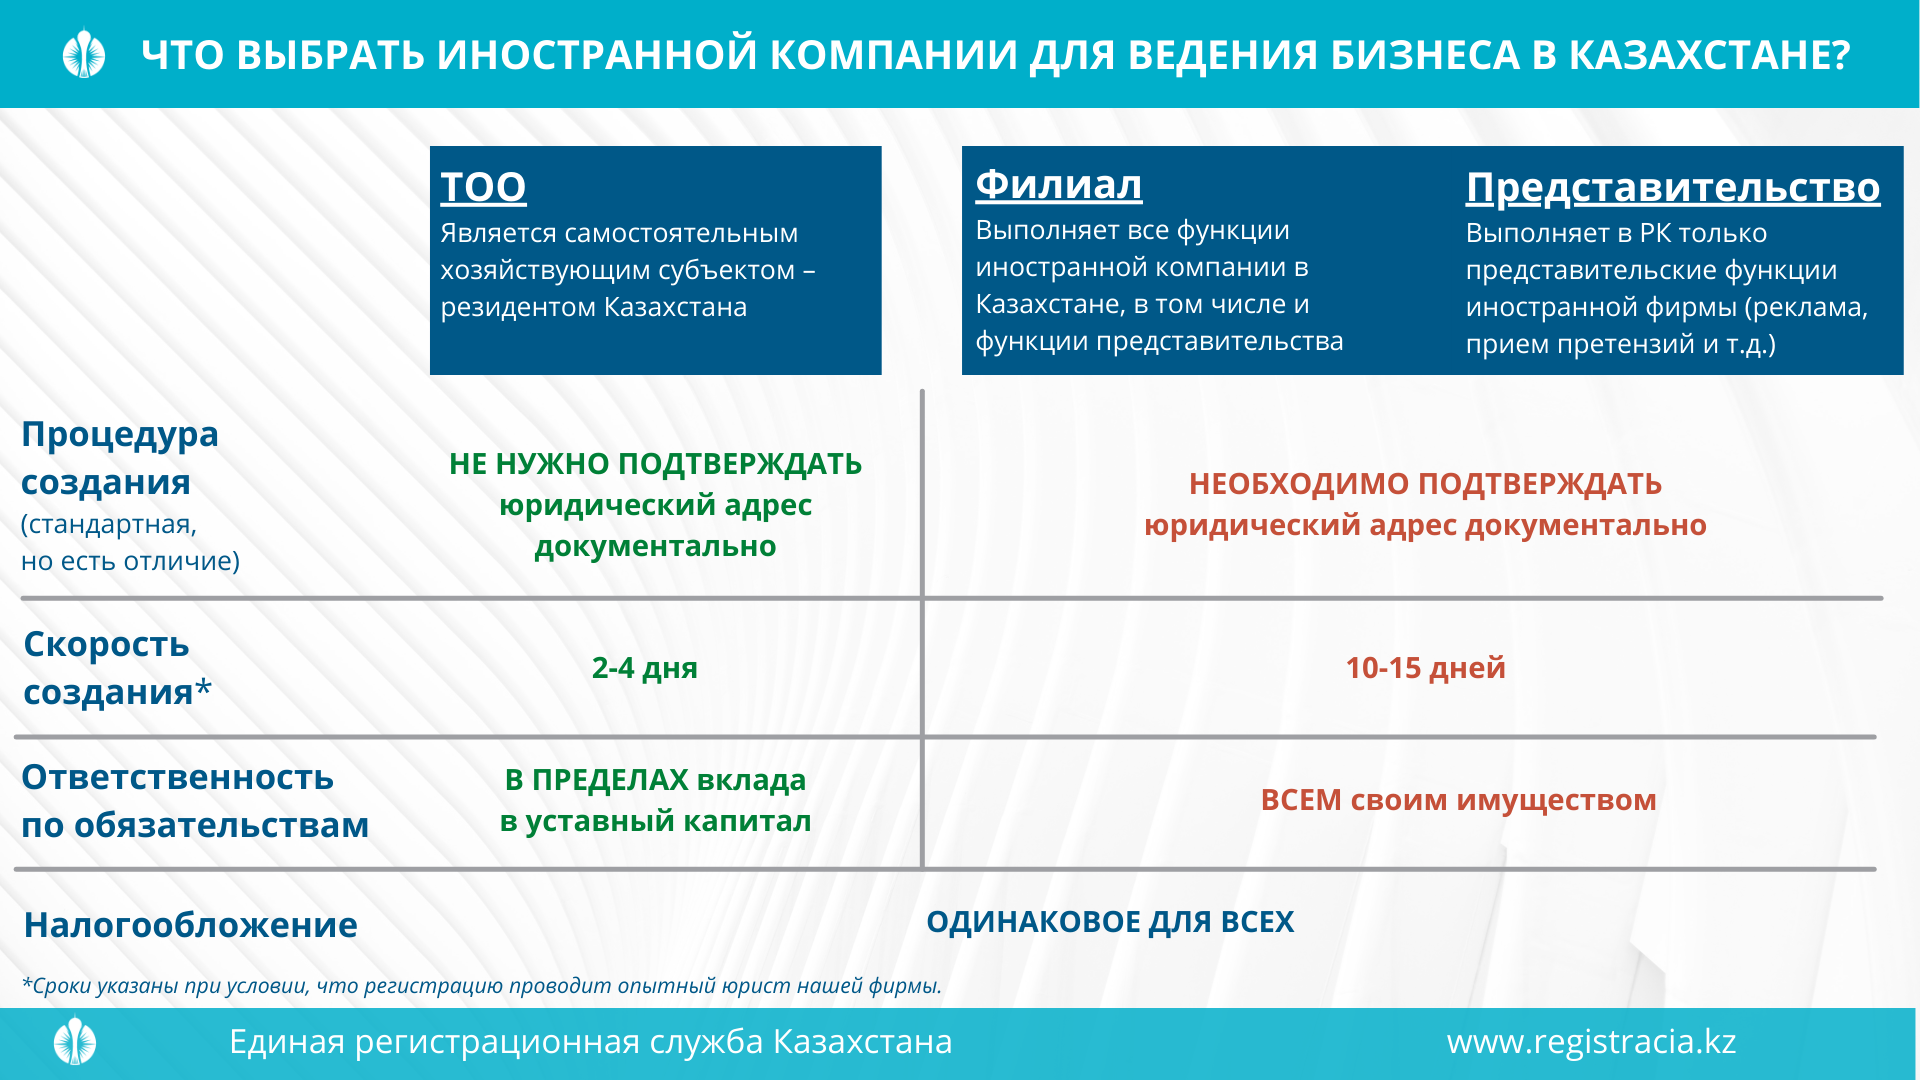 ТОО филиал из представительство в Казахстане